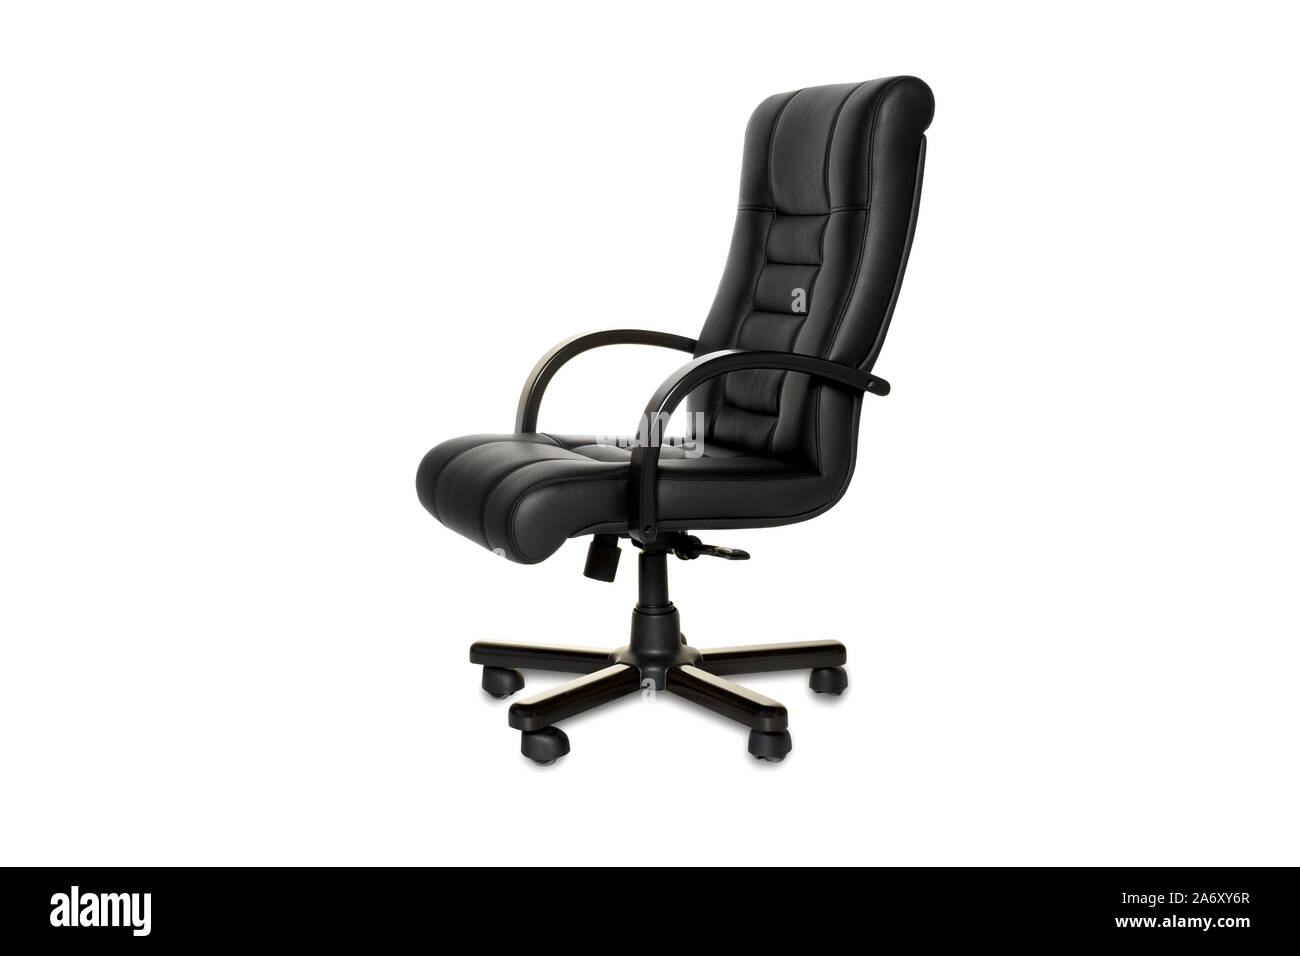 comfortable executive chair Stock Photo